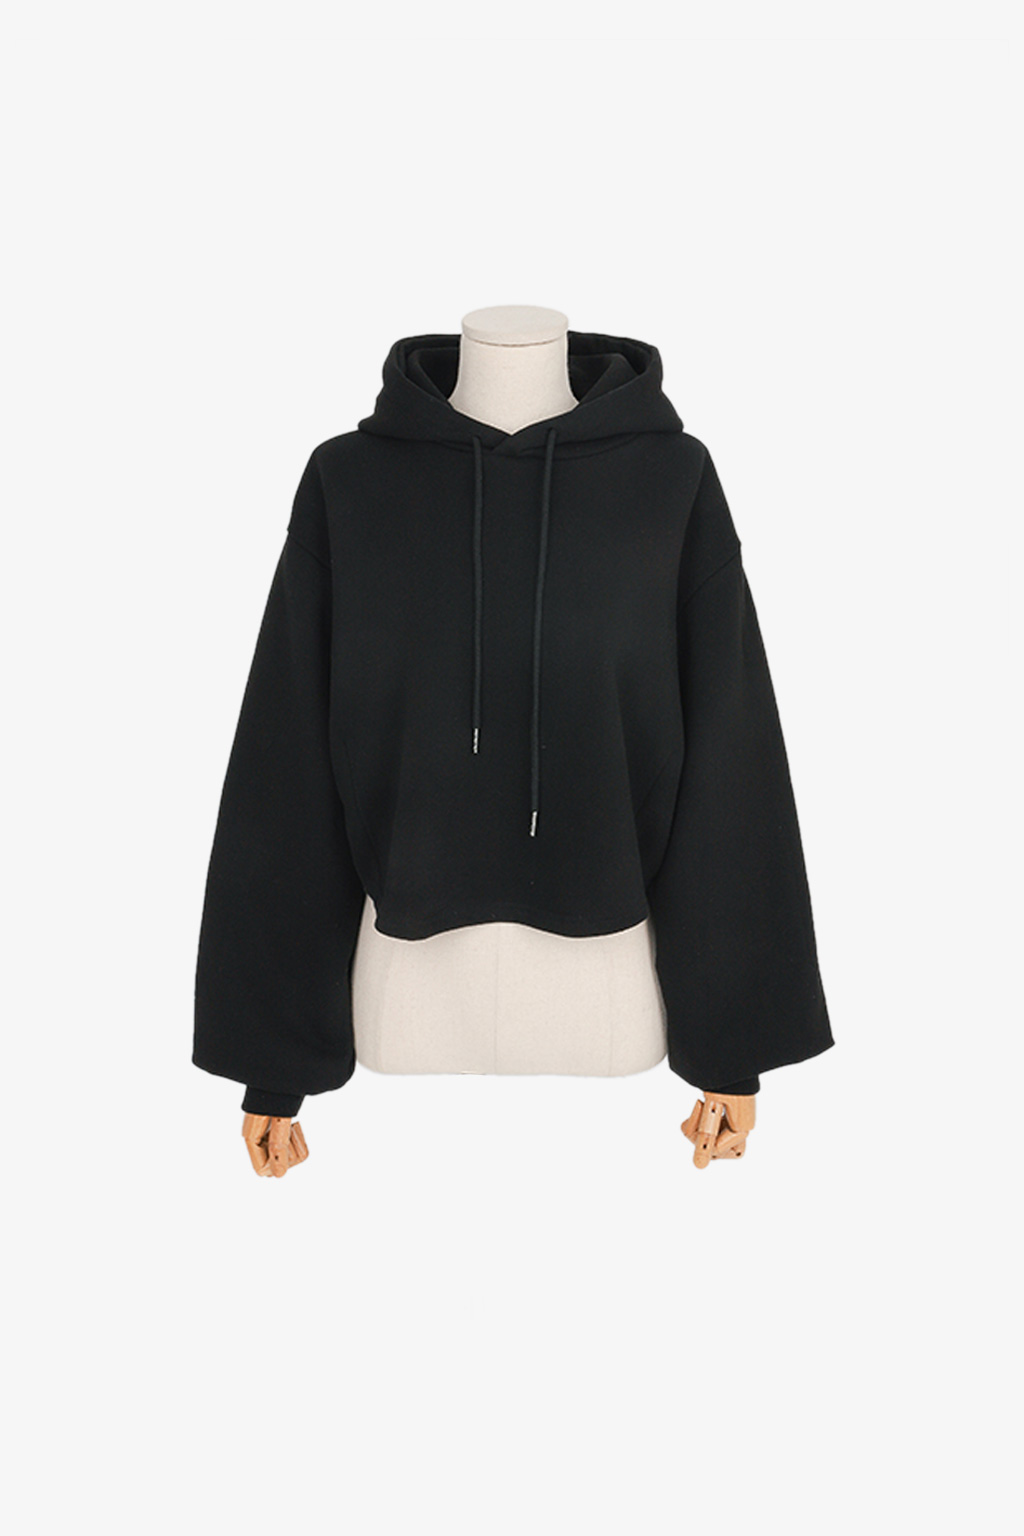 [ASTIER] emily crop hoodie